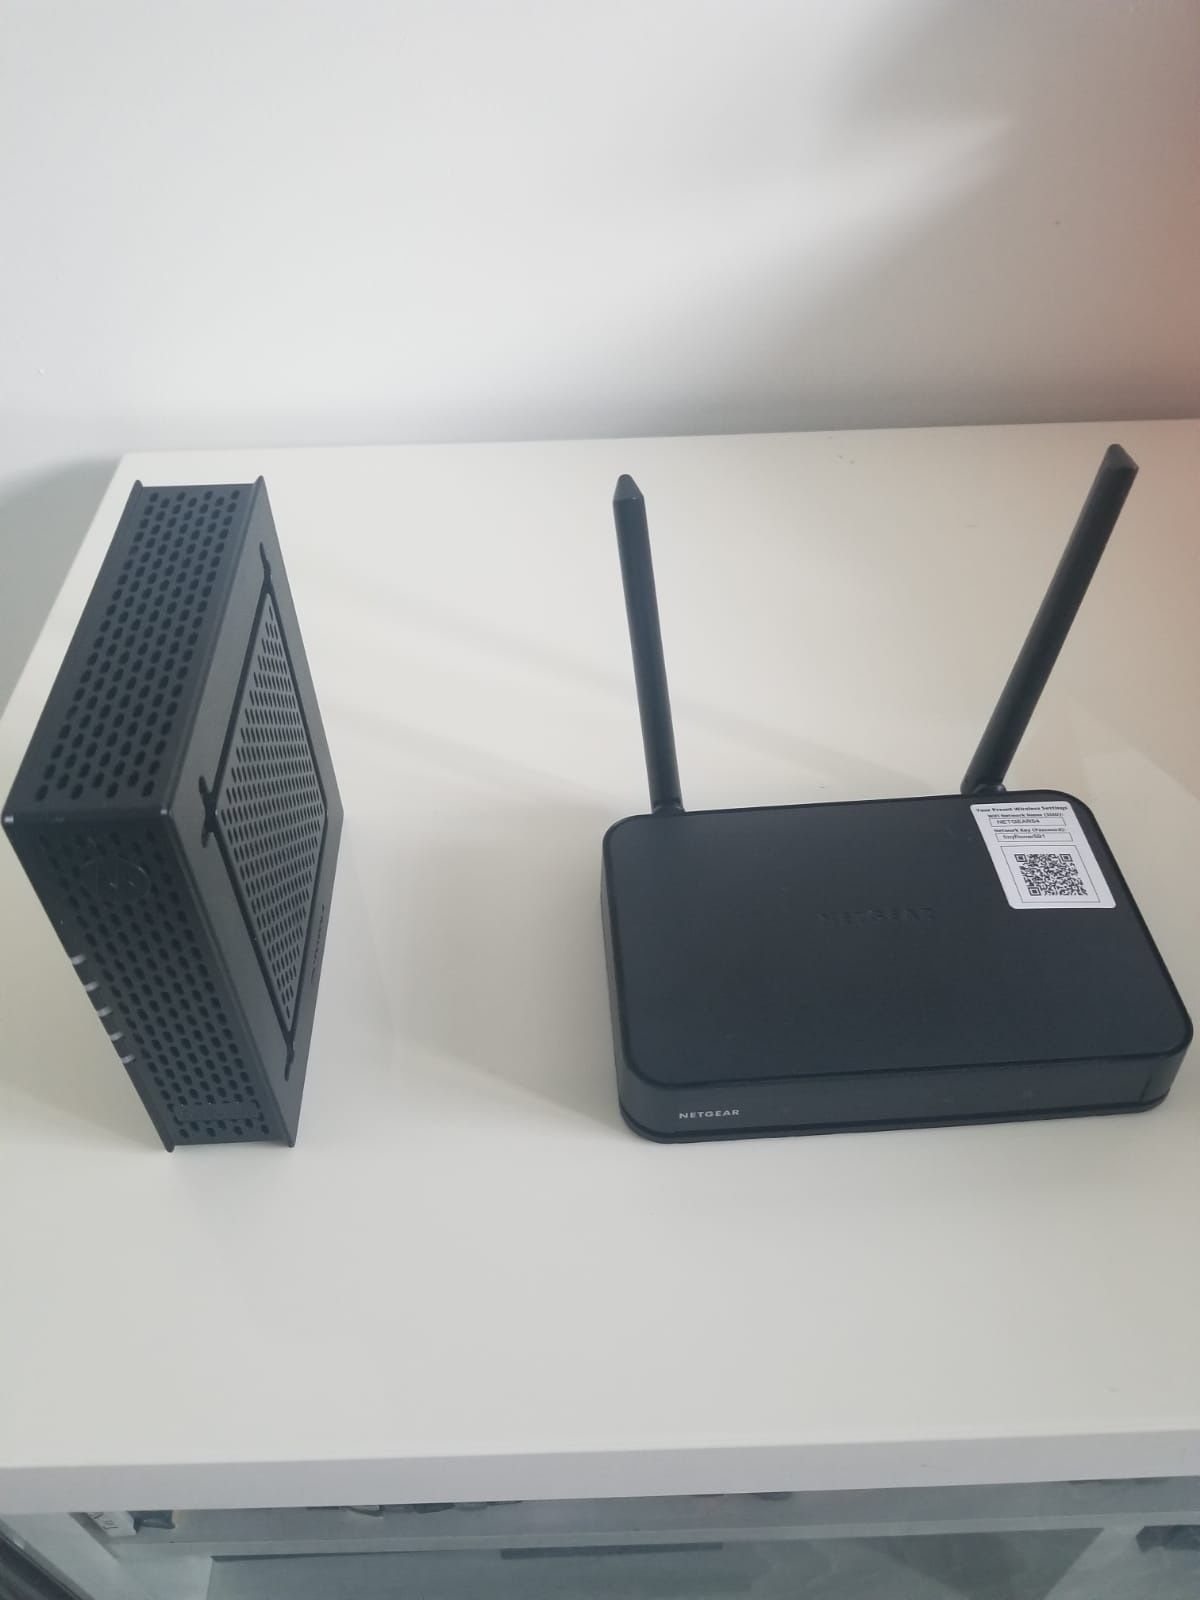 Motorola Modem and netgear router